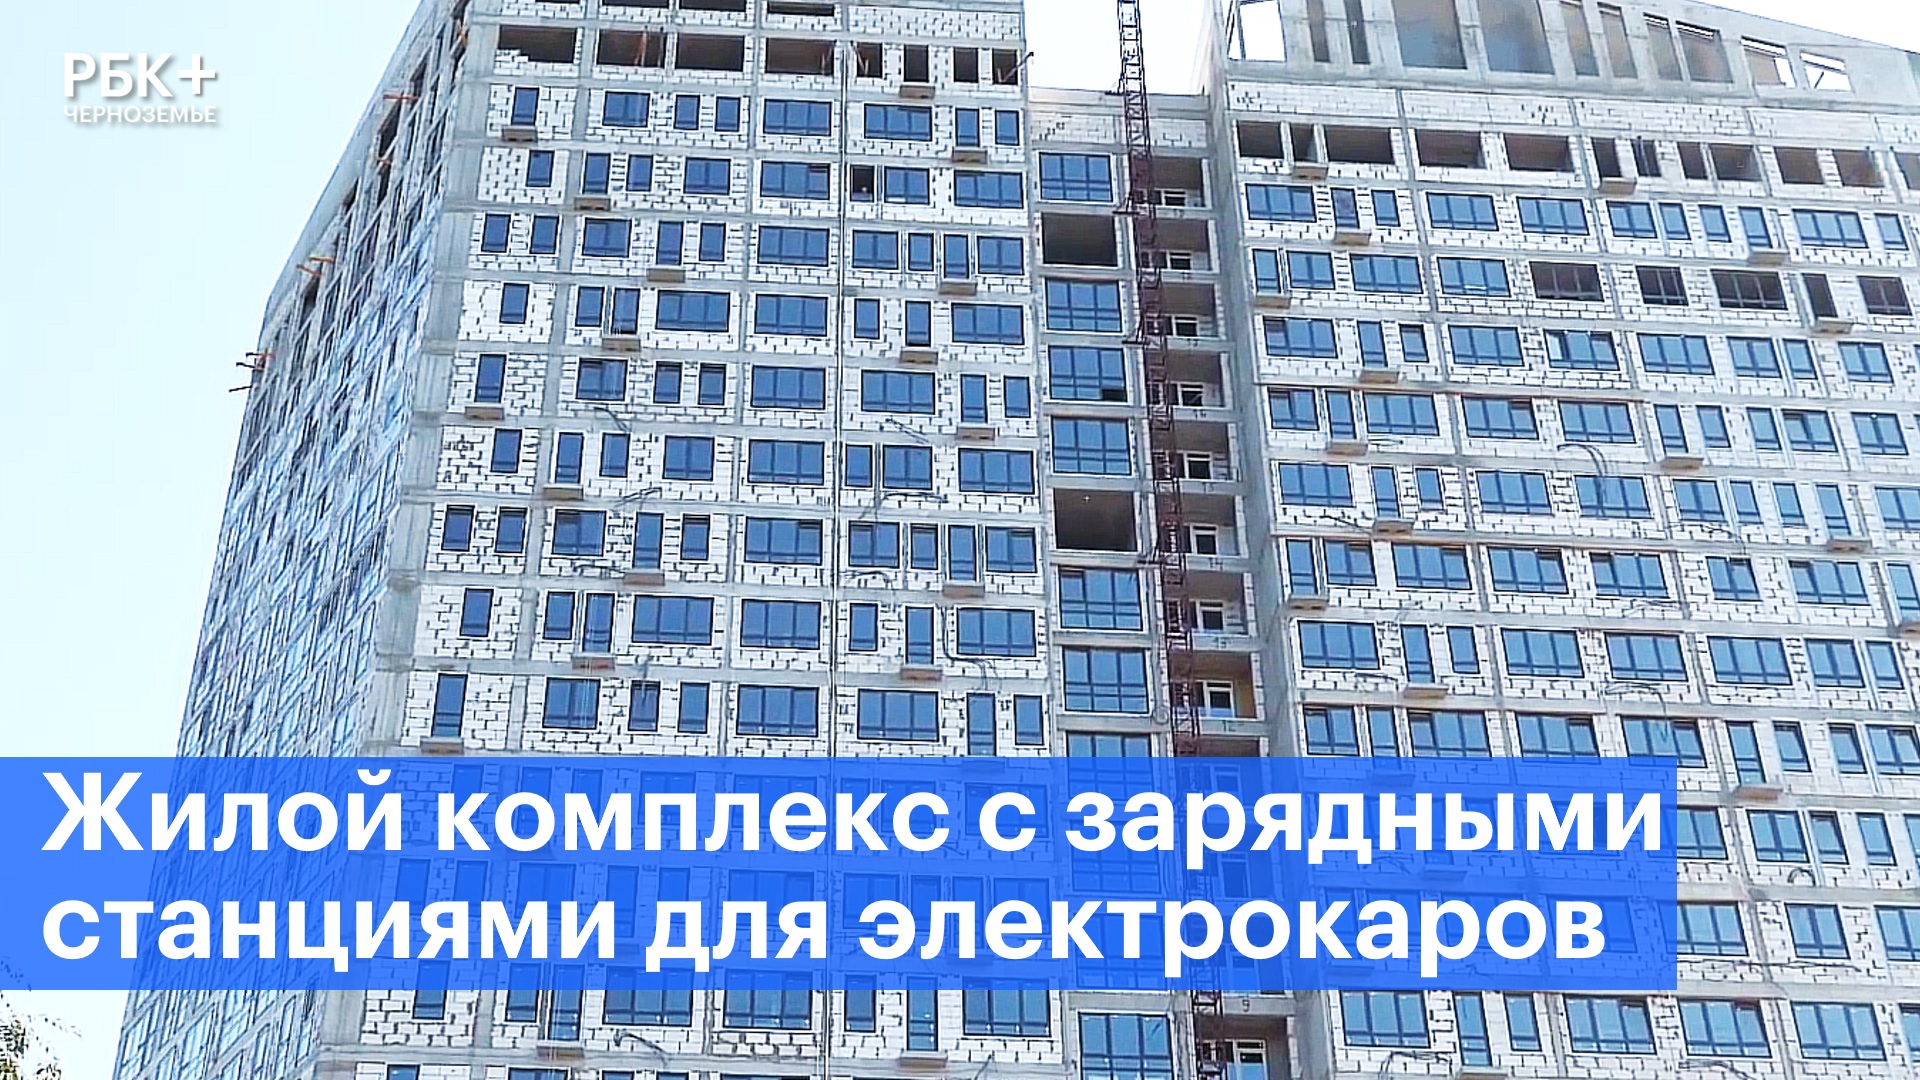 В Воронеже появится жилой комплекс с зарядными станциями для электрокаров